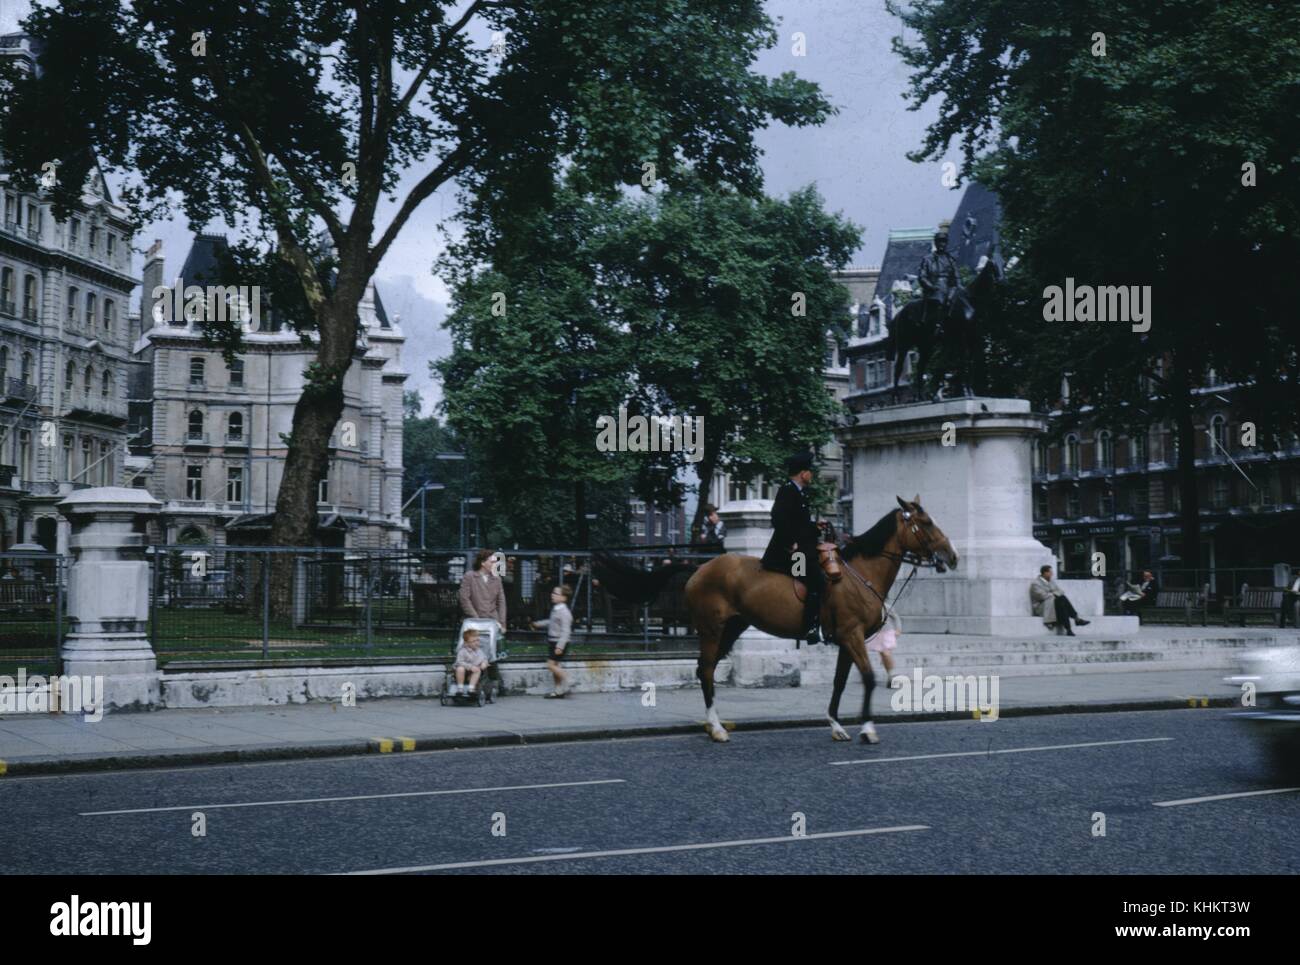 Officier de la police montée à cheval au-delà d'un parc public, une femme avec deux enfants, un dans une poussette, debout à proximité, Royaume-Uni, 1965. Banque D'Images